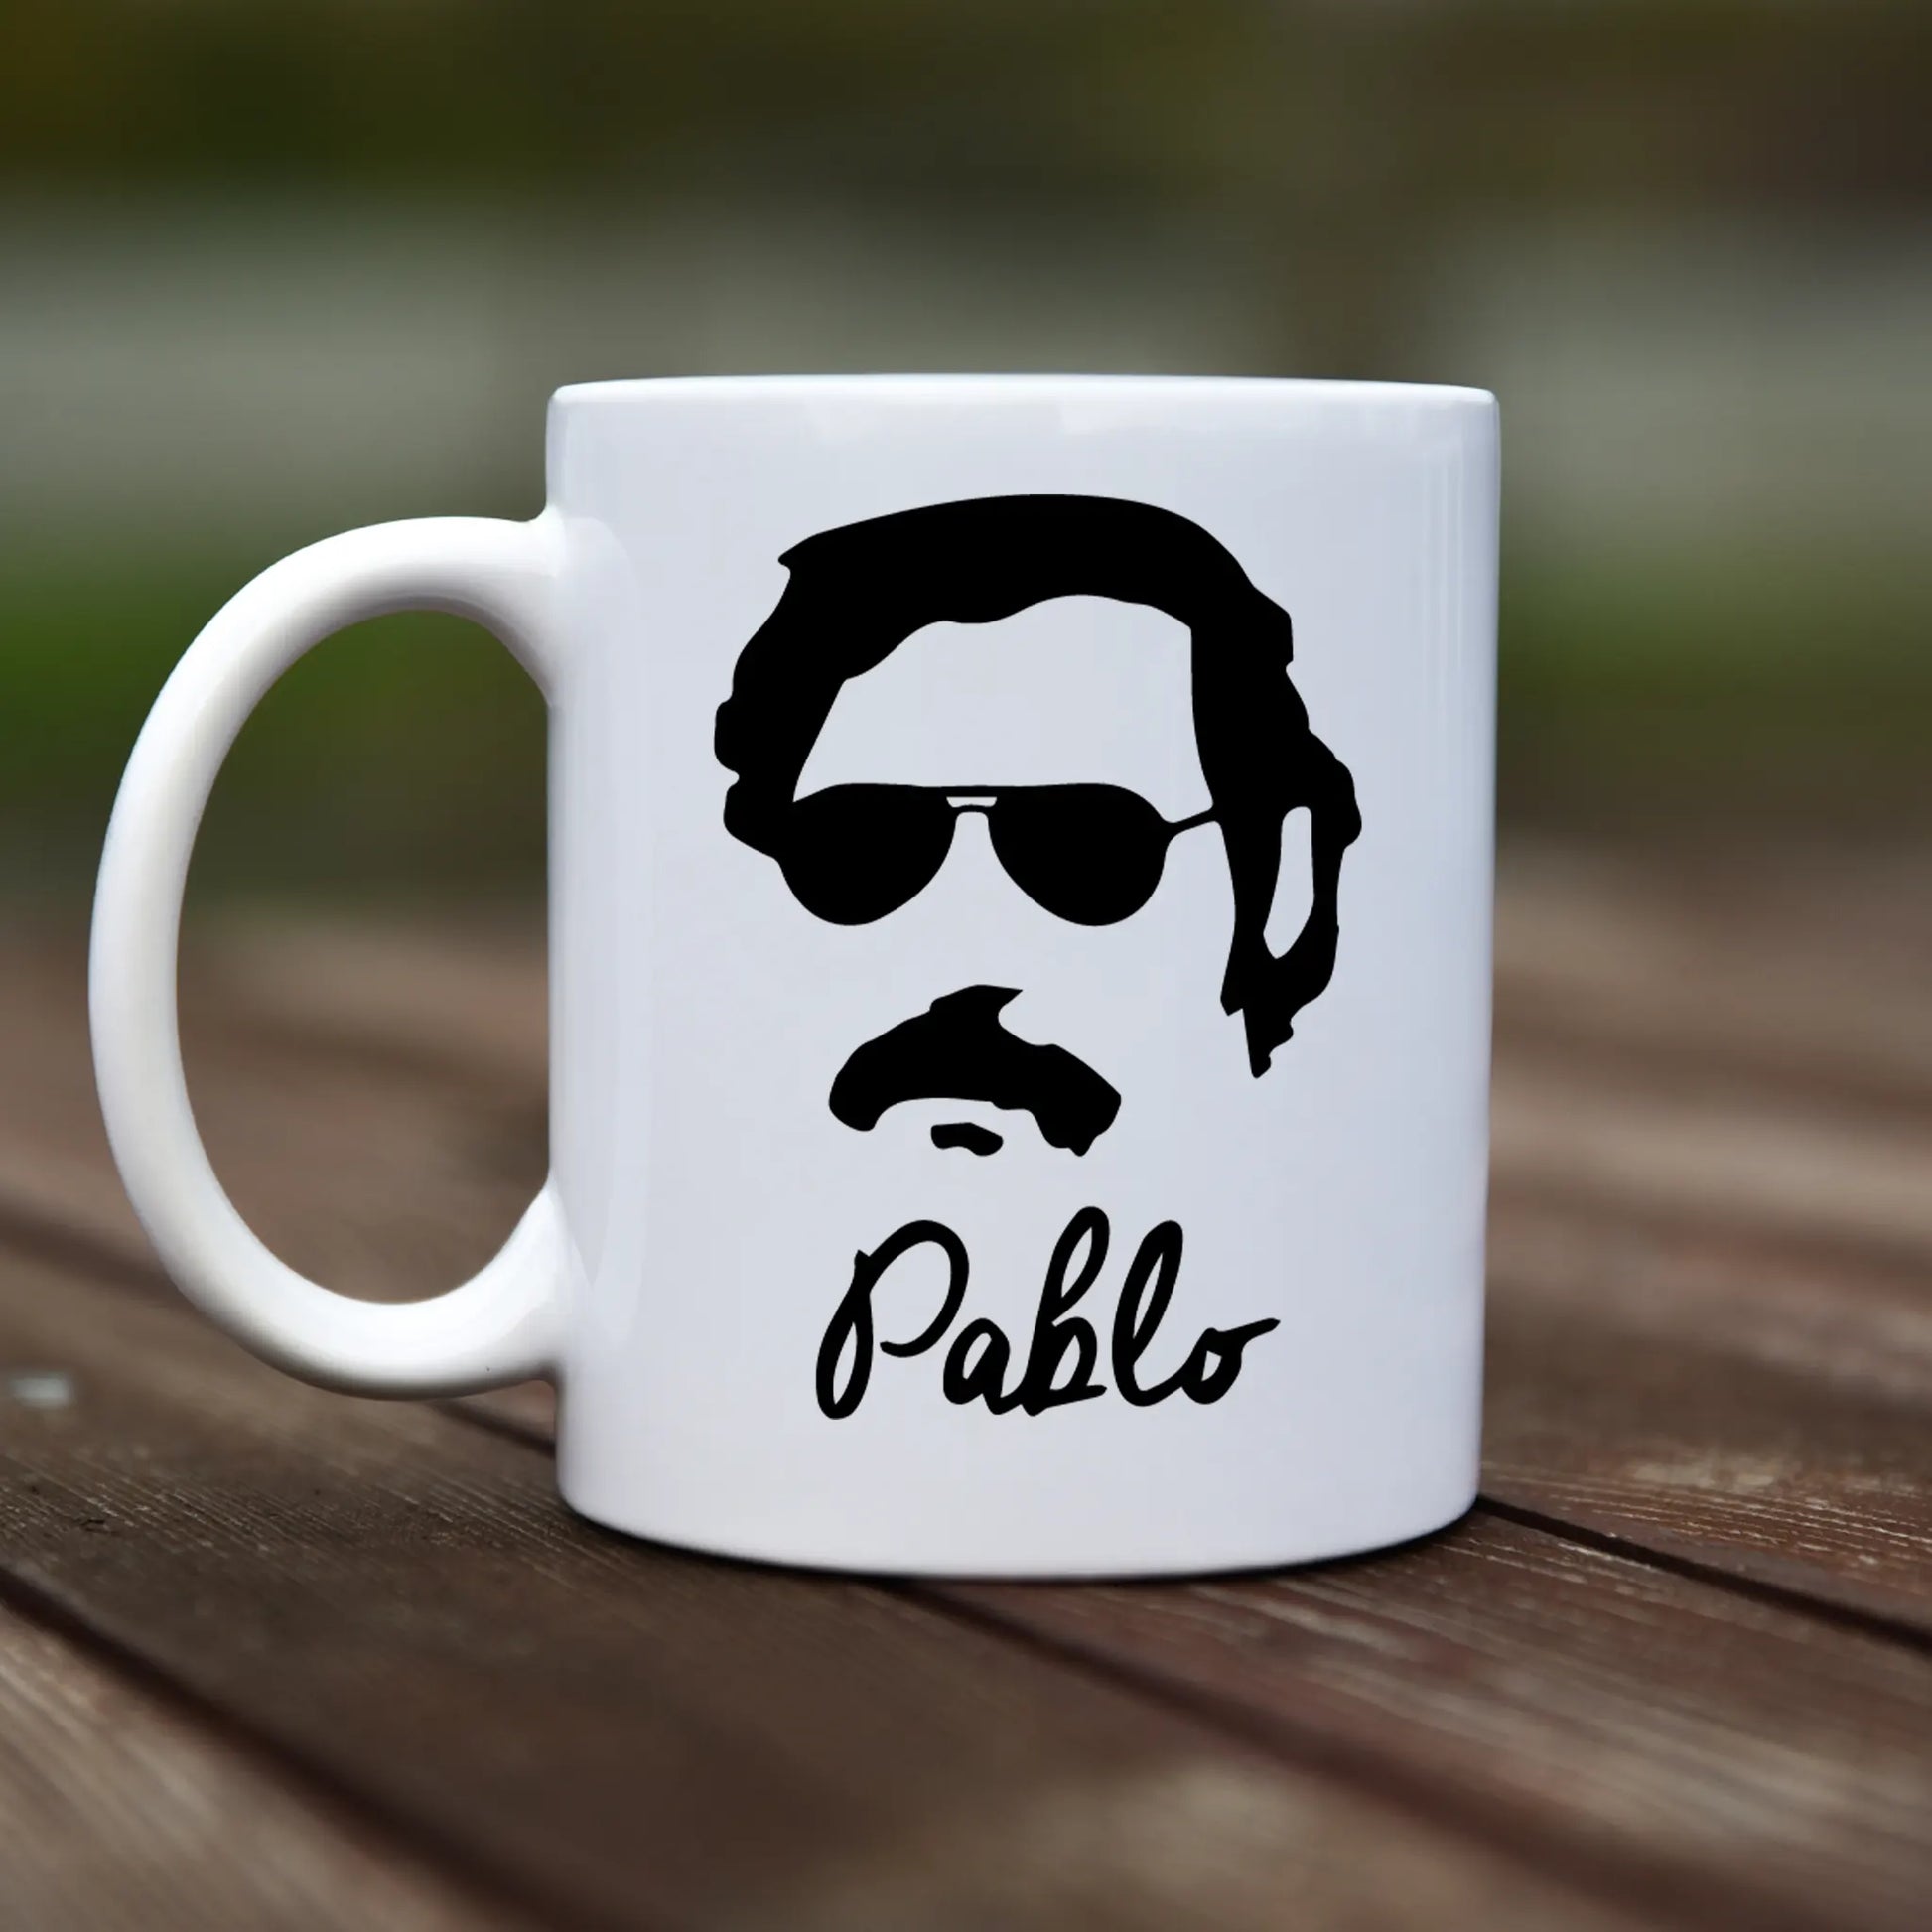 Mug - Pablo Escobar - rvdesignprint